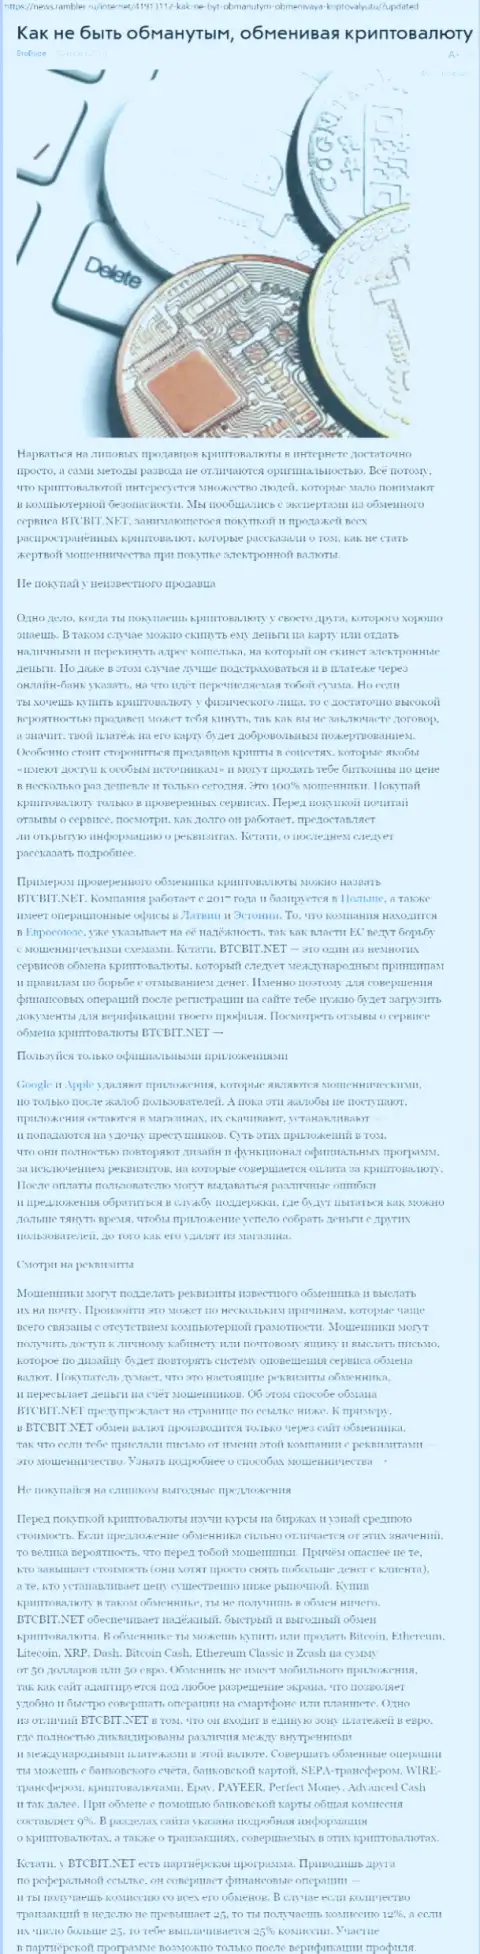 Статья о BTCBIT Net на news rambler ru